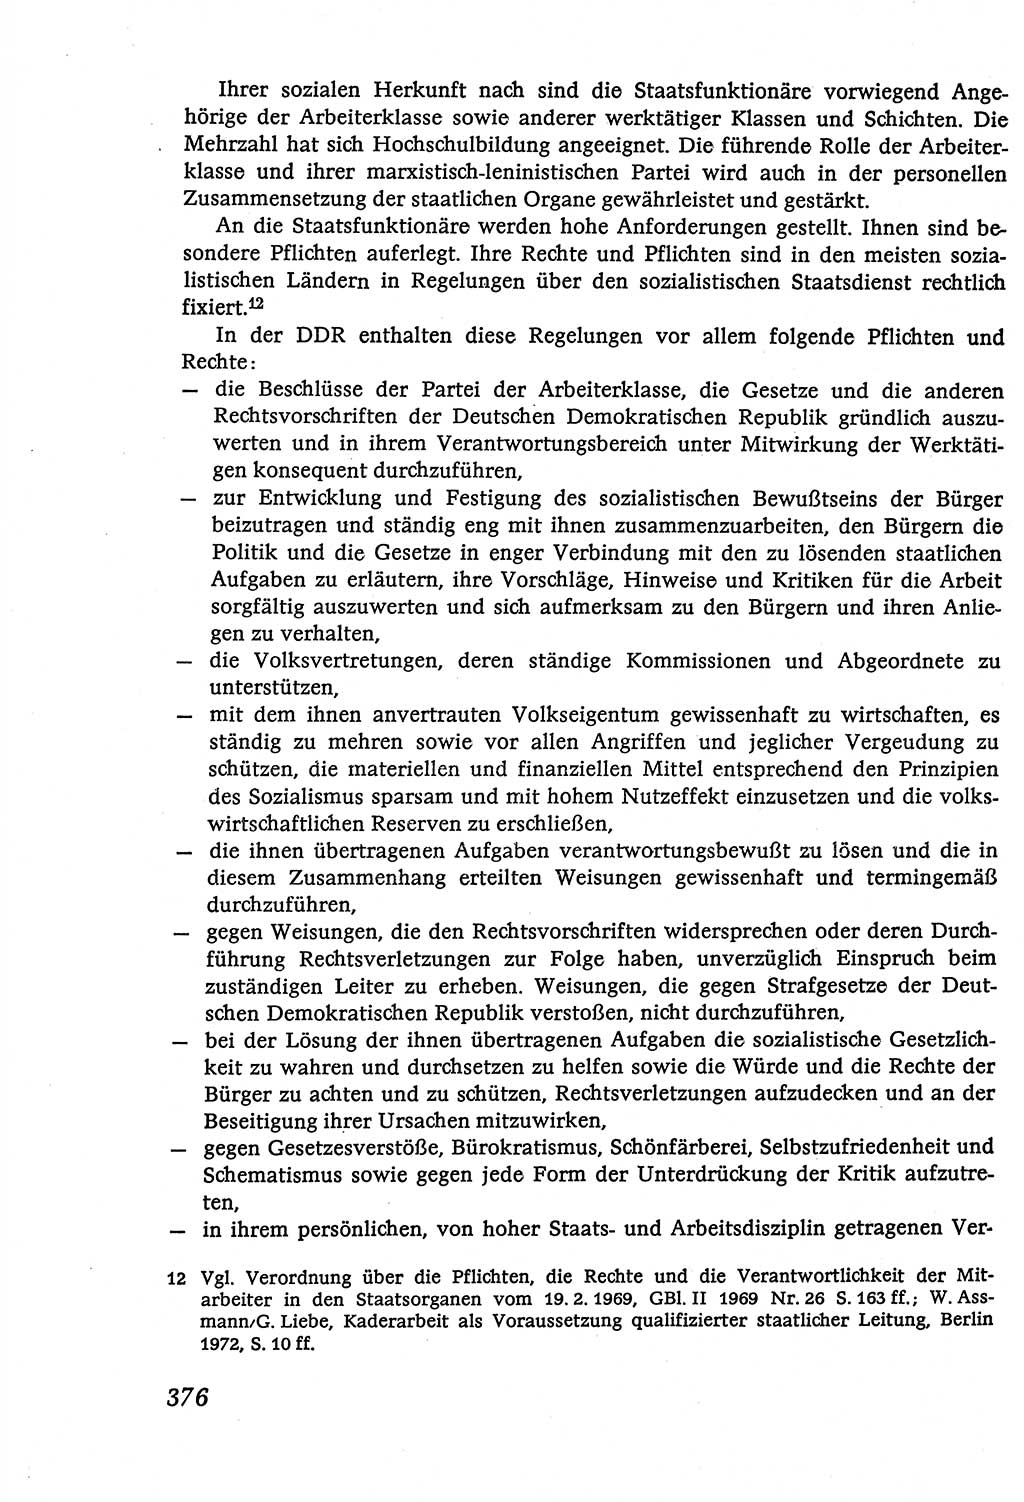 Marxistisch-leninistische (ML) Staats- und Rechtstheorie [Deutsche Demokratische Republik (DDR)], Lehrbuch 1980, Seite 376 (ML St.-R.-Th. DDR Lb. 1980, S. 376)